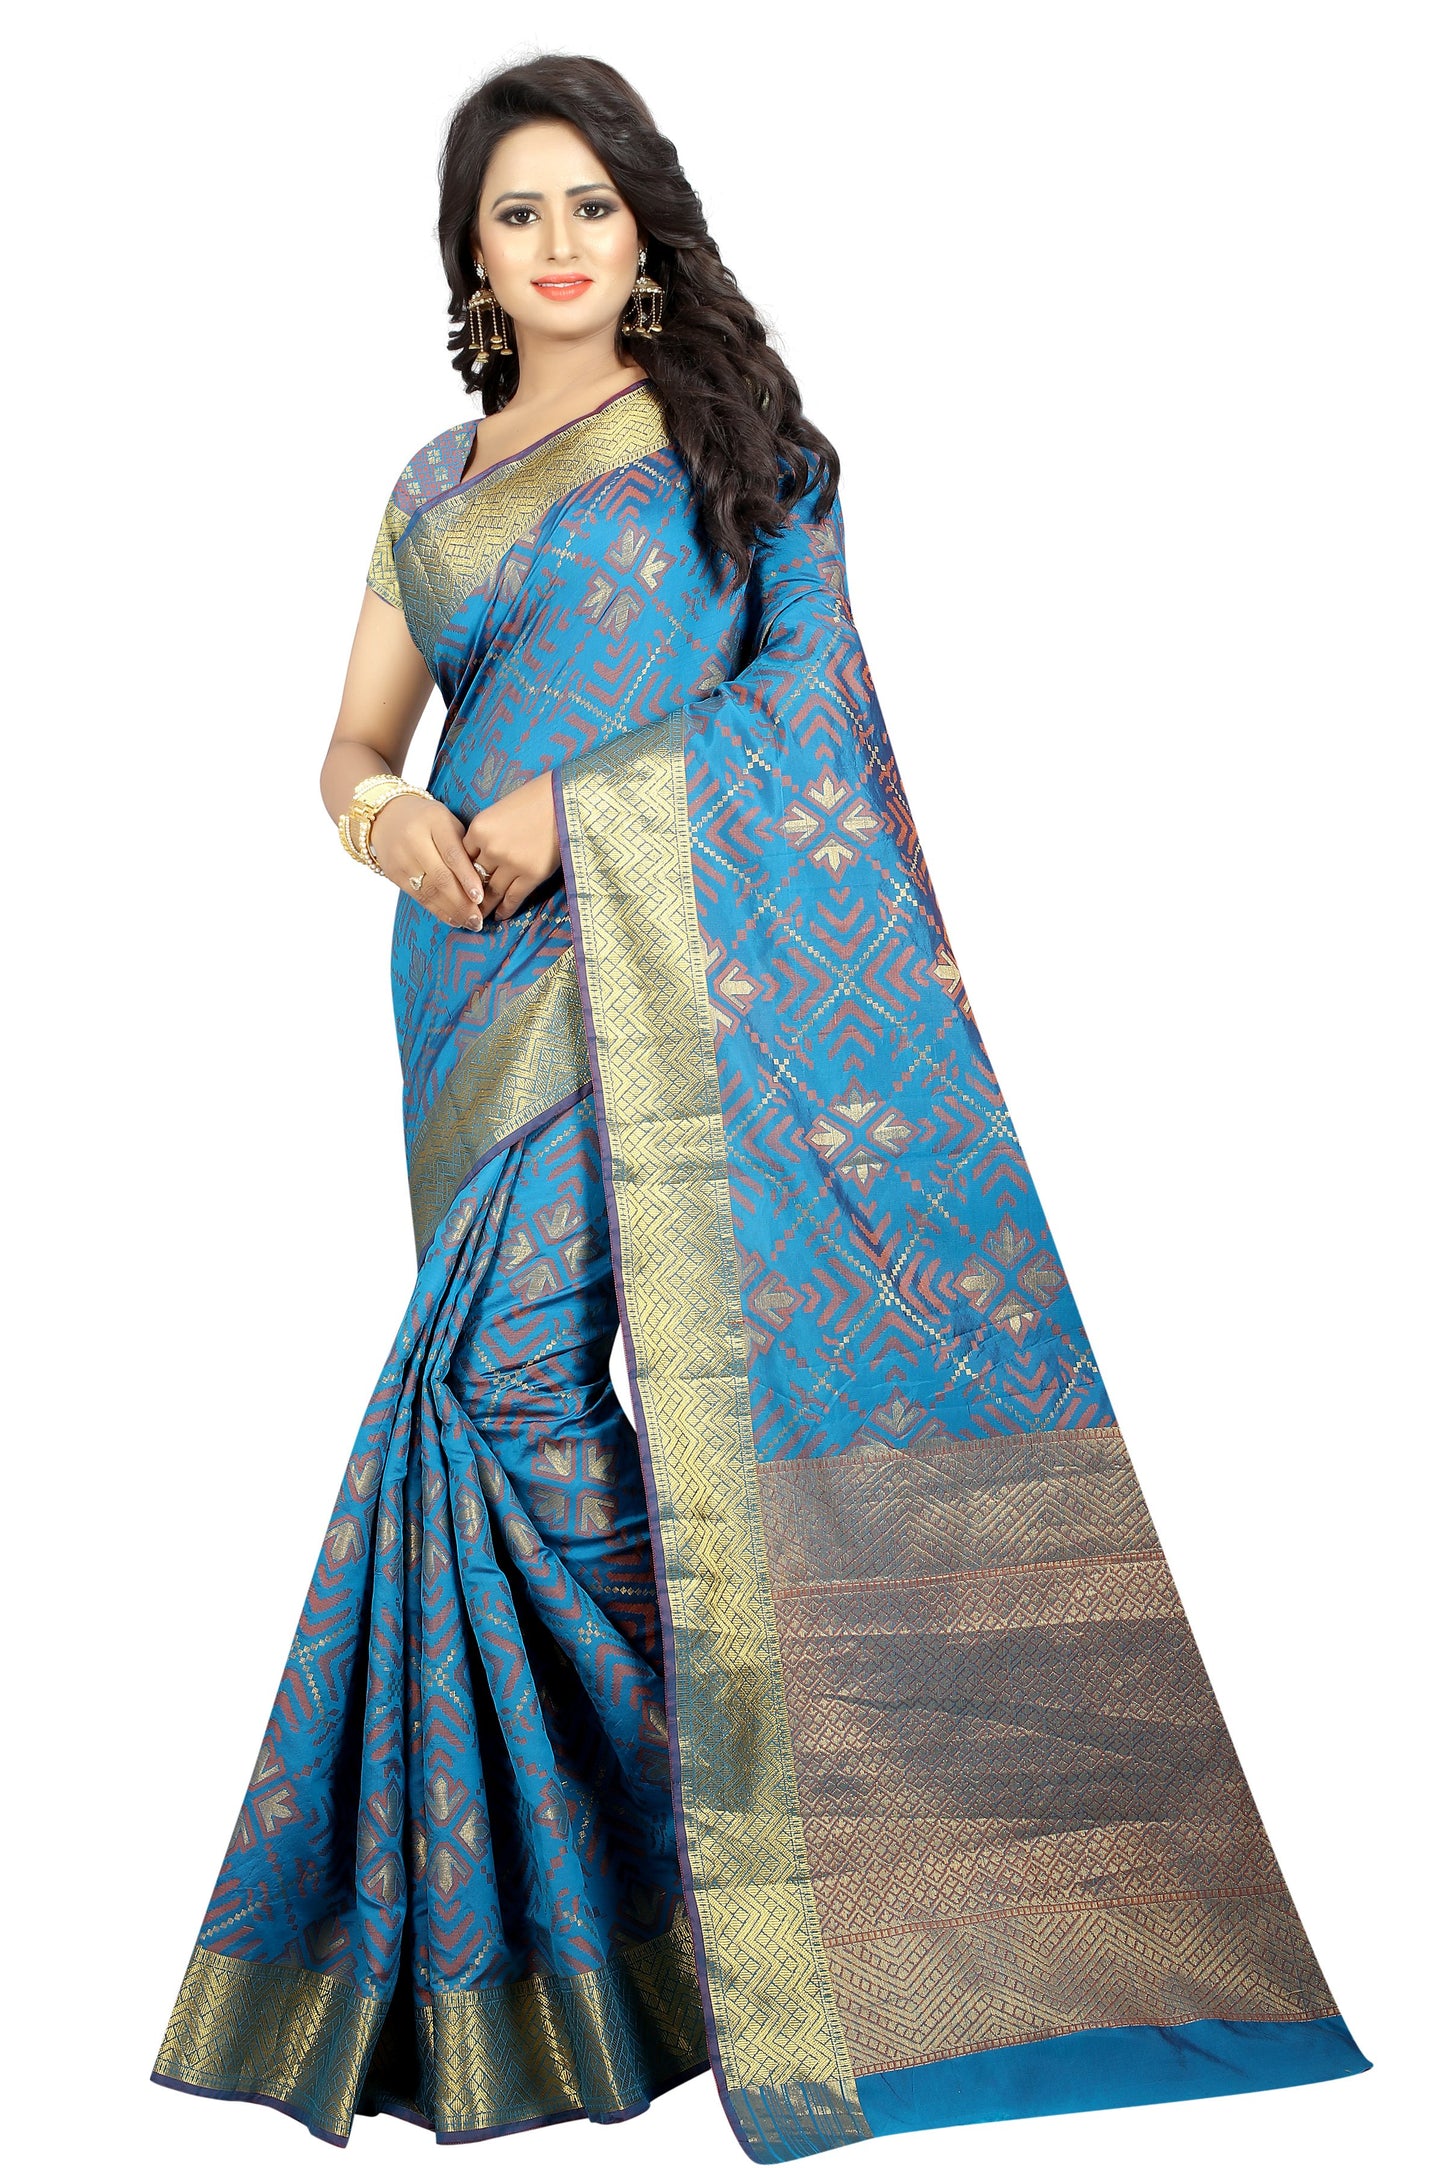 Zalak Light Blue Banarasi Jacquard Silk Saree-SRP-JS-19 light blue coloured grand saree